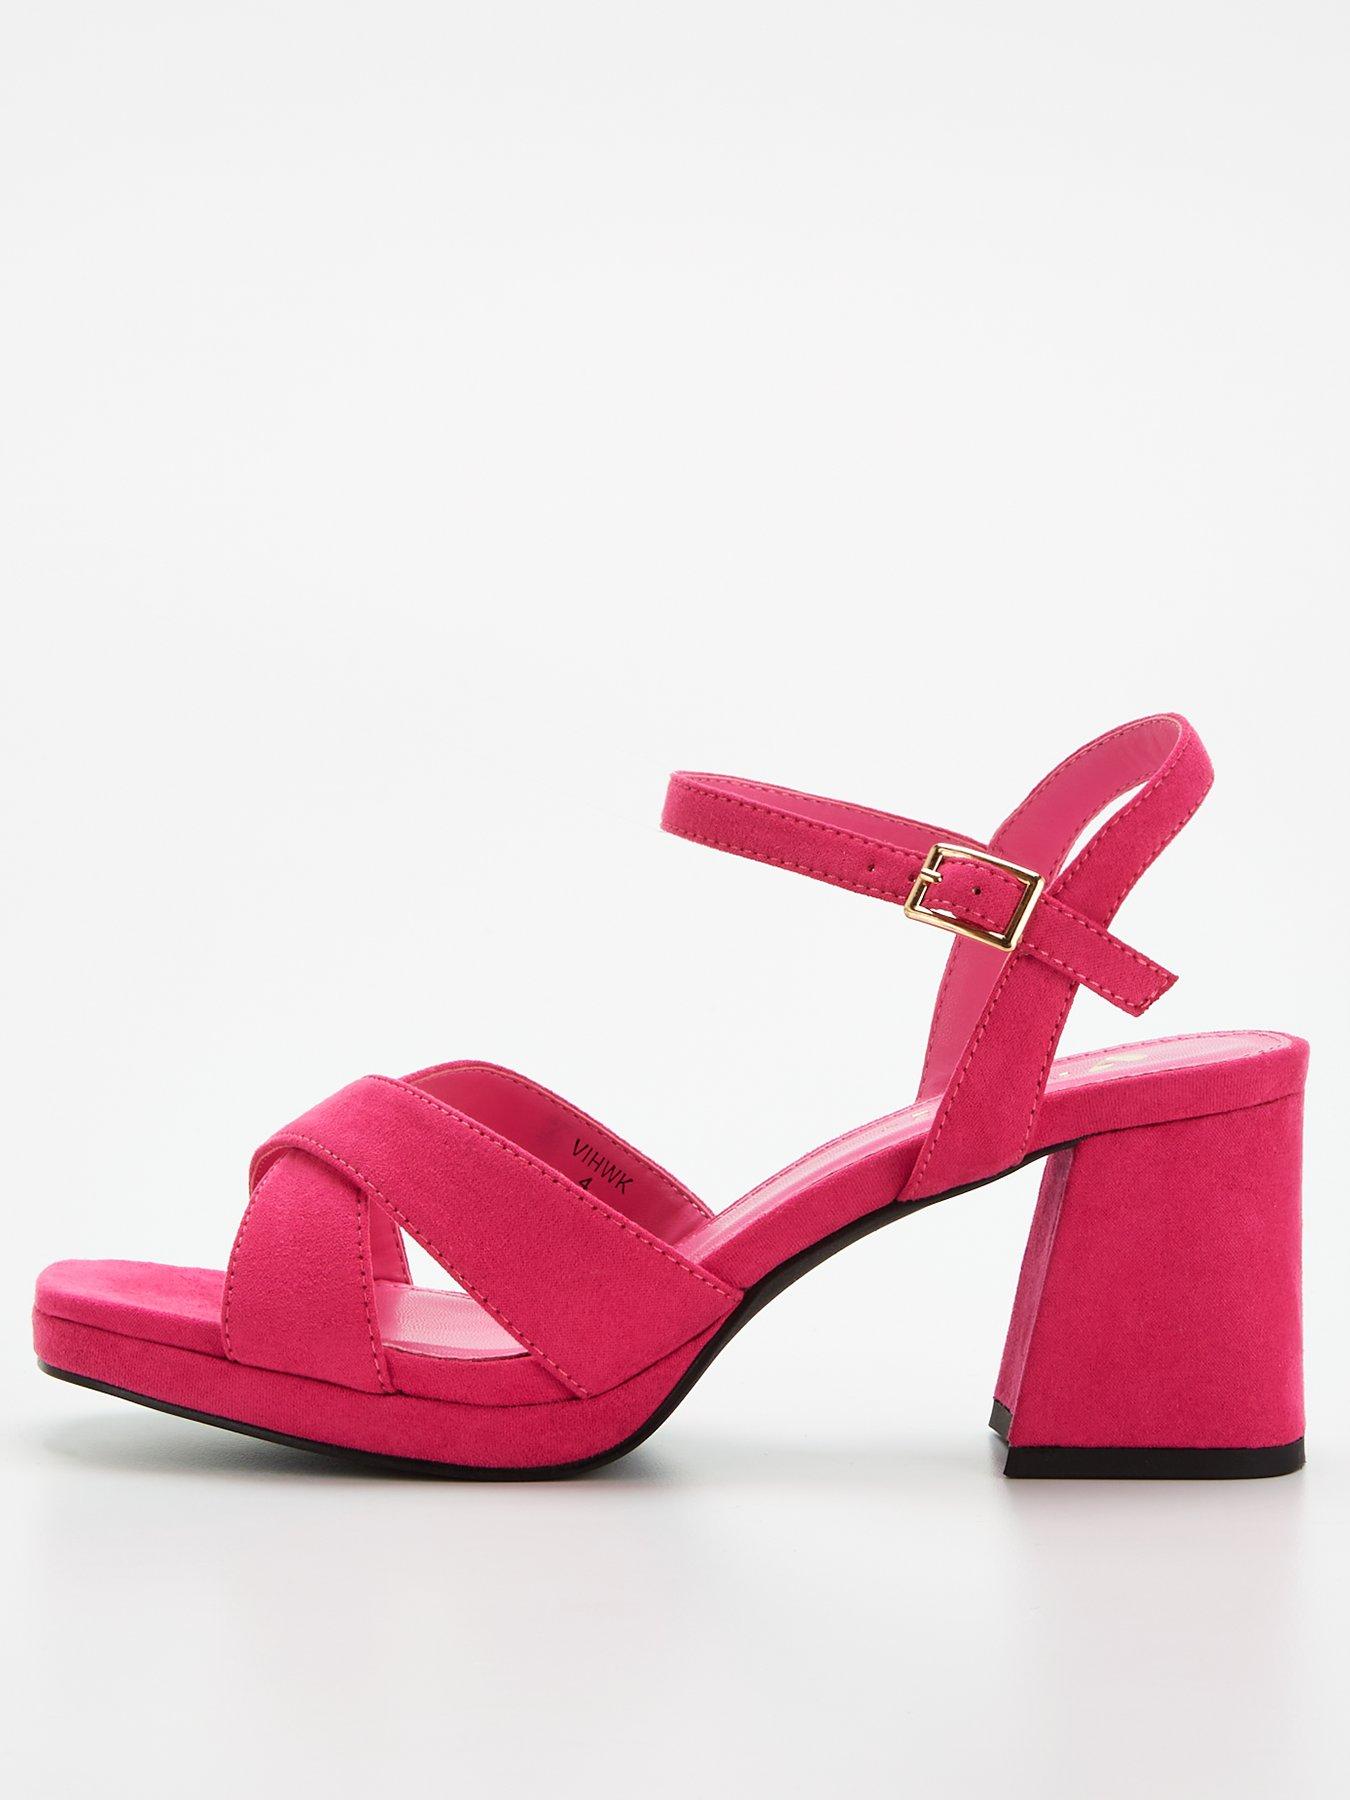 Velvet heels Gianmarco Lorenzi Pink size 37 EU in Velvet - 21503169